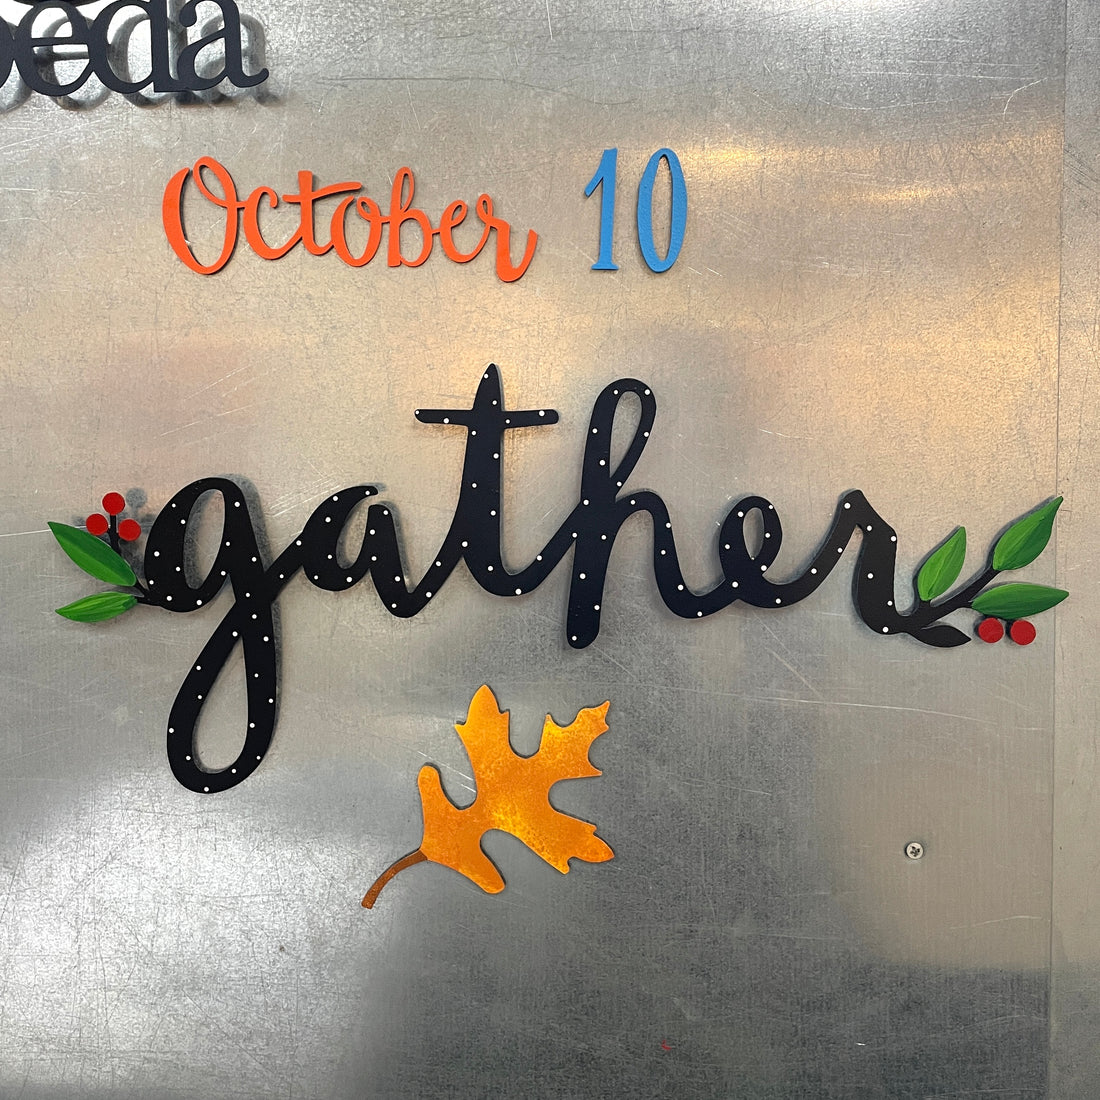 Gather Workshop - October 10